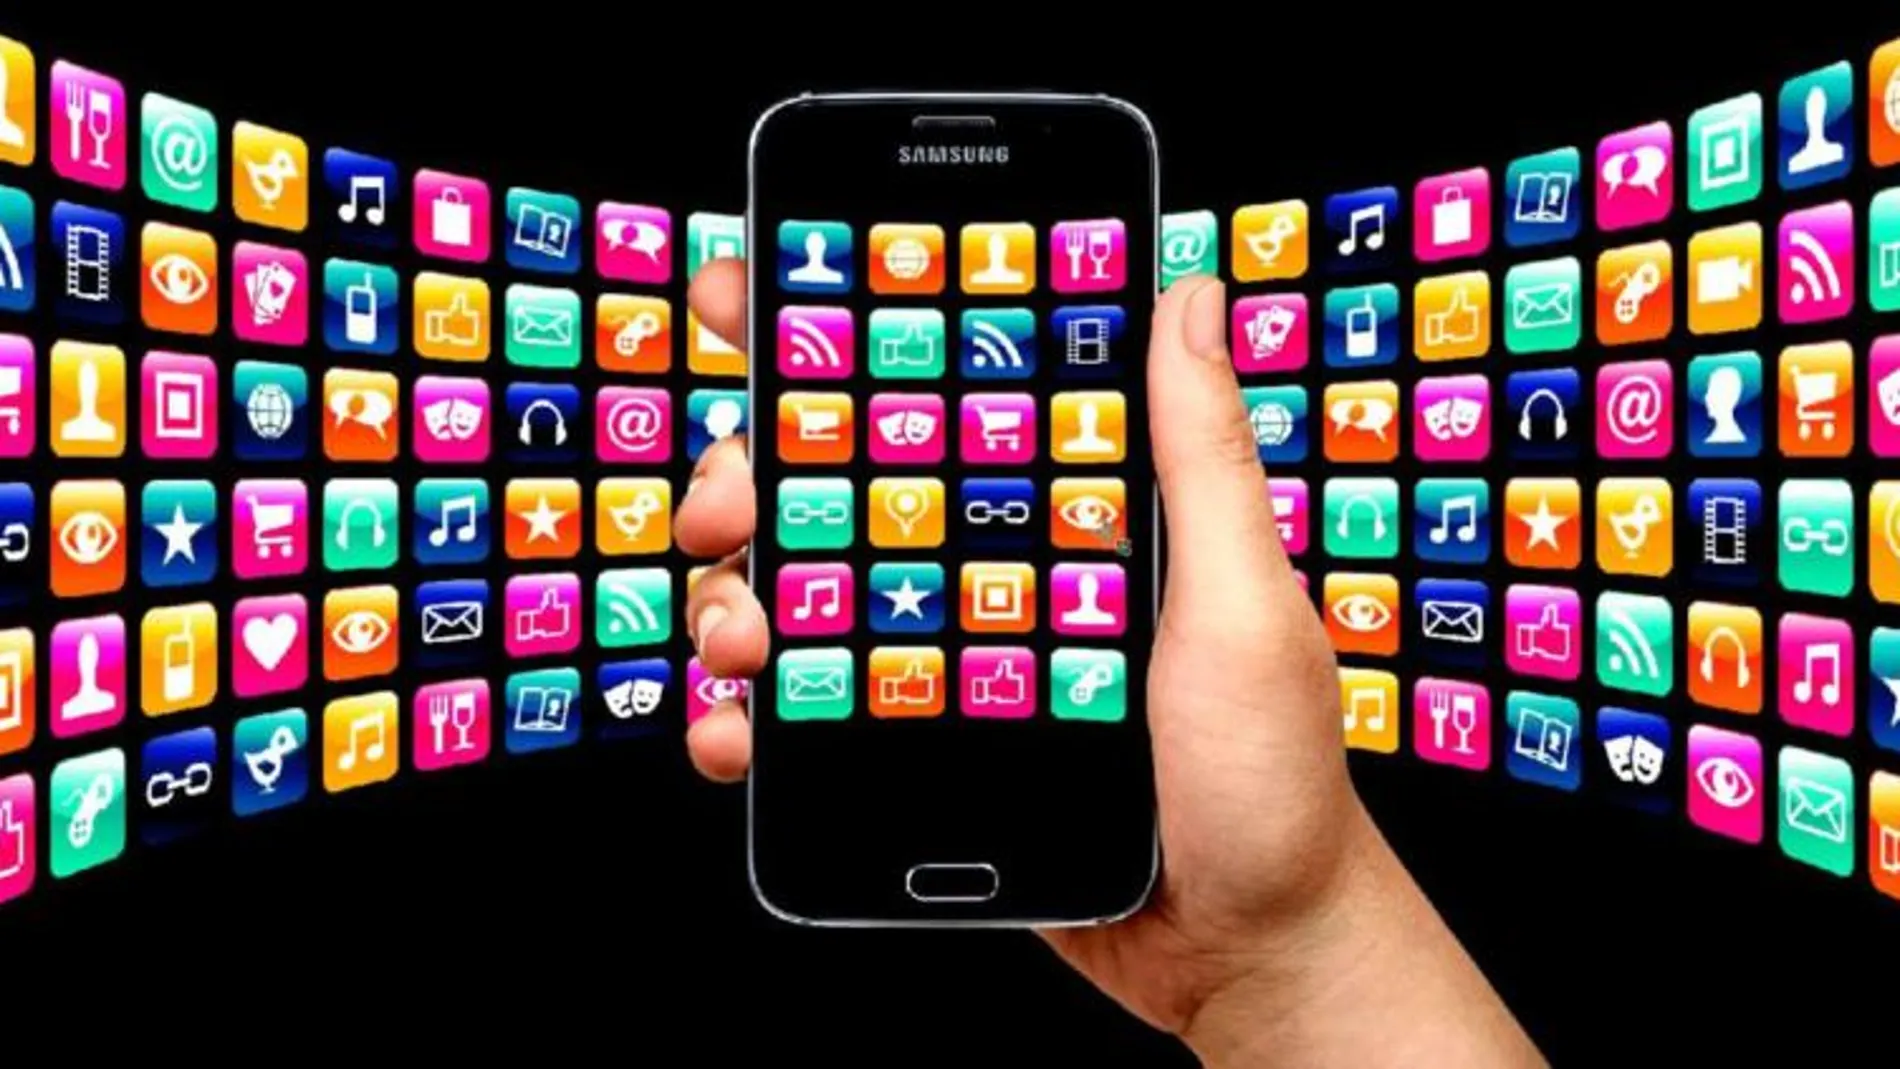 Los usuarios móviles de iOS buscan apps en la App Store con más frecuencia que los de Android en Google Play